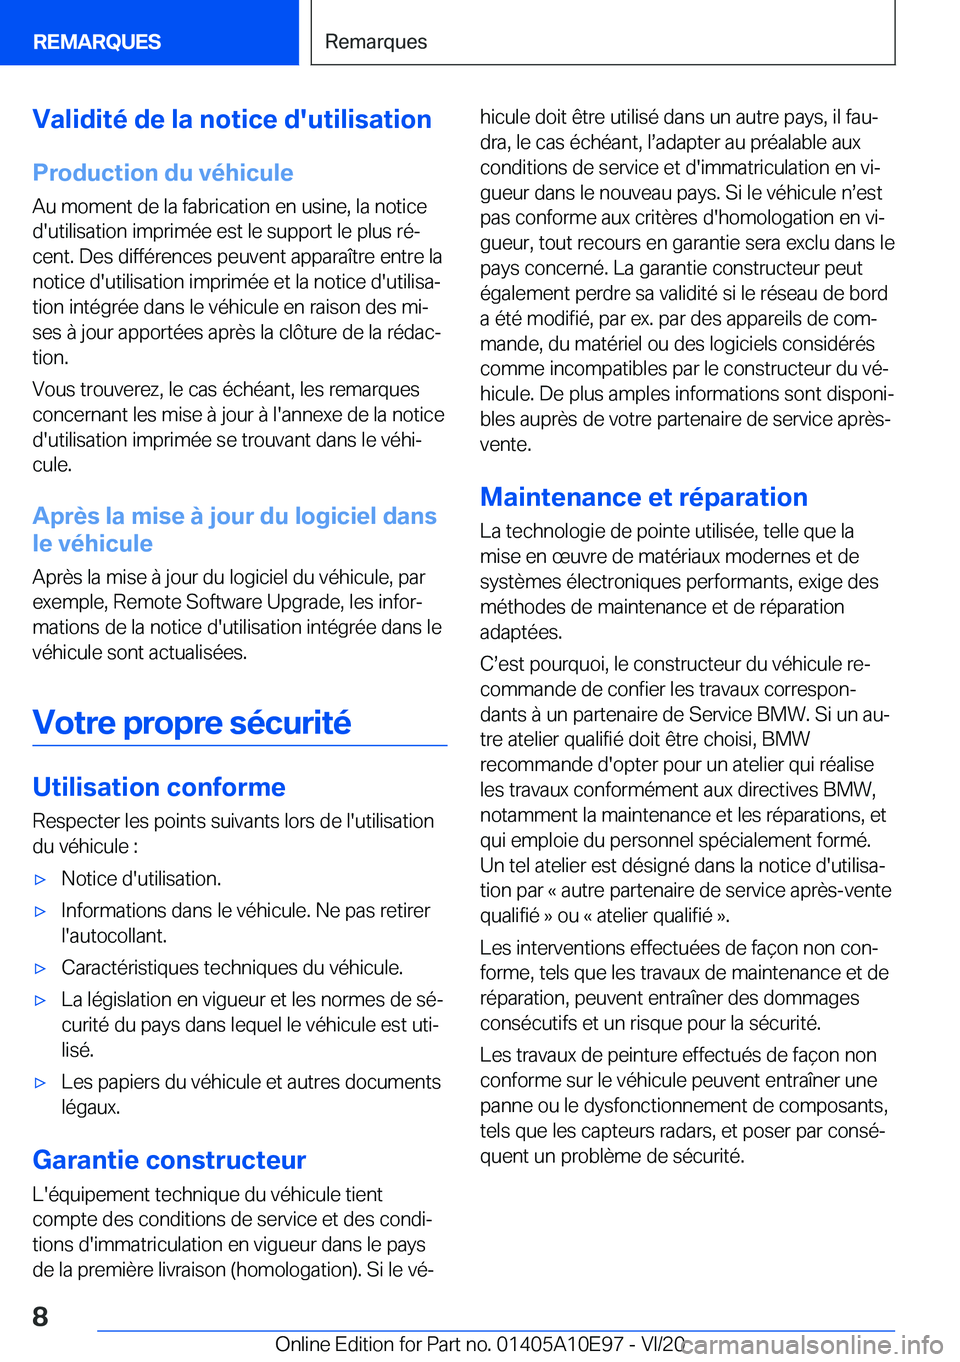 BMW X3 2021  Notices Demploi (in French) �V�a�l�i�d�i�t�é��d�e��l�a��n�o�t�i�c�e��d�'�u�t�i�l�i�s�a�t�i�o�n
�P�r�o�d�u�c�t�i�o�n��d�u��v�é�h�i�c�u�l�e
�A�u��m�o�m�e�n�t��d�e��l�a��f�a�b�r�i�c�a�t�i�o�n��e�n��u�s�i�n�e�,��l